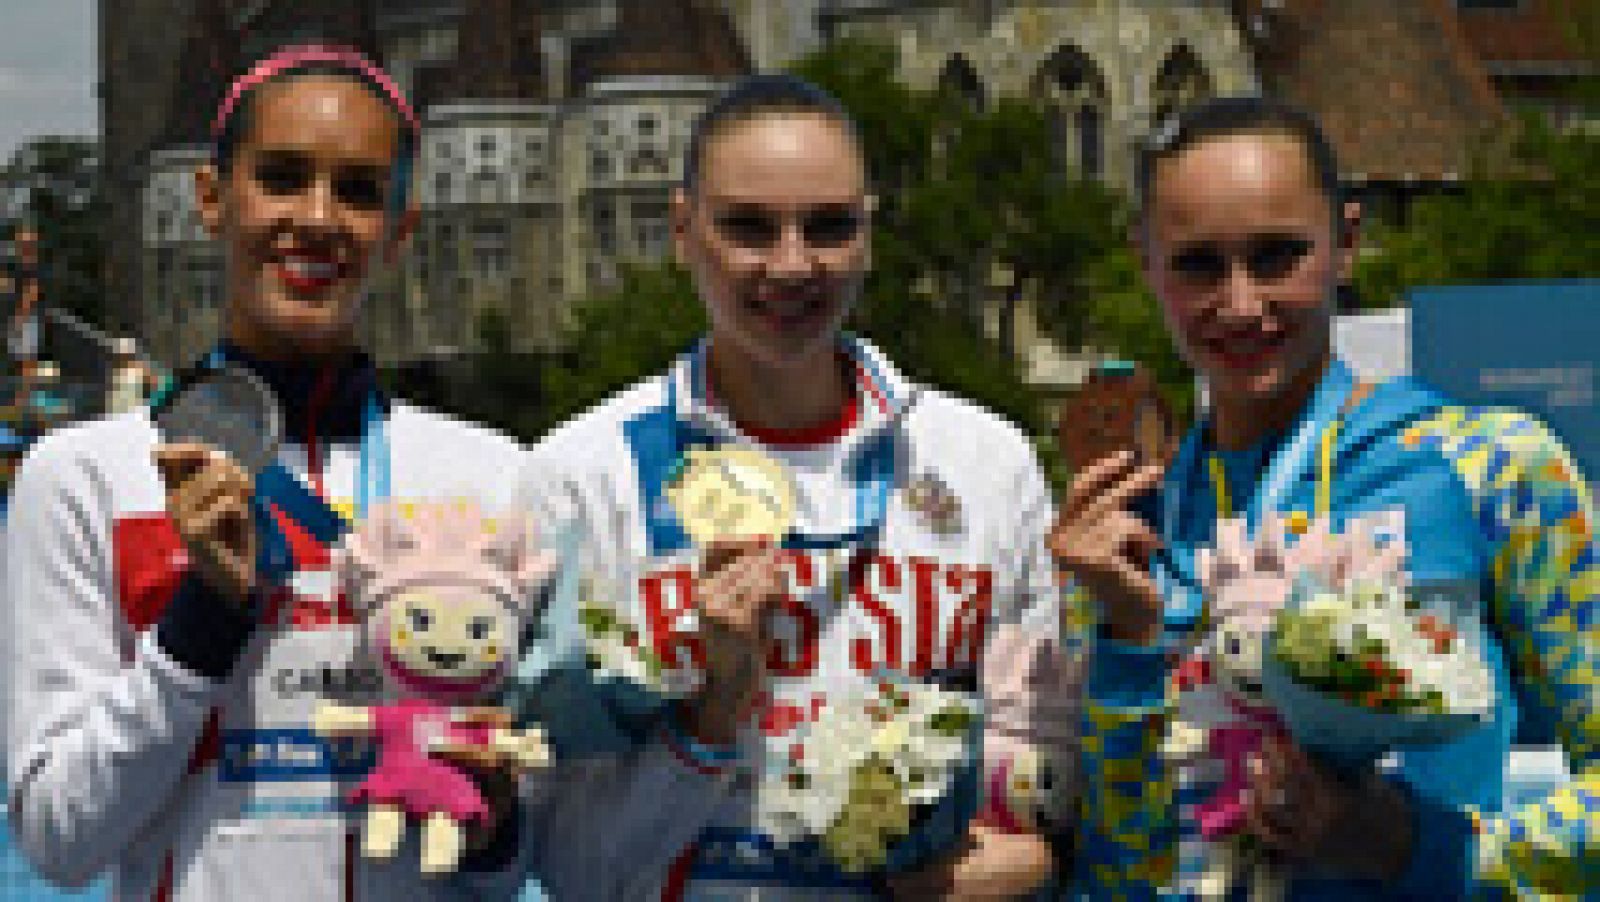 La nadadora española recibe su segunda medalla de plata en el Mundial, al quedar segunda en el solo libre, por detrás de la rusa Kolesnichenko y por delante de la ucraniana Voloshyna.